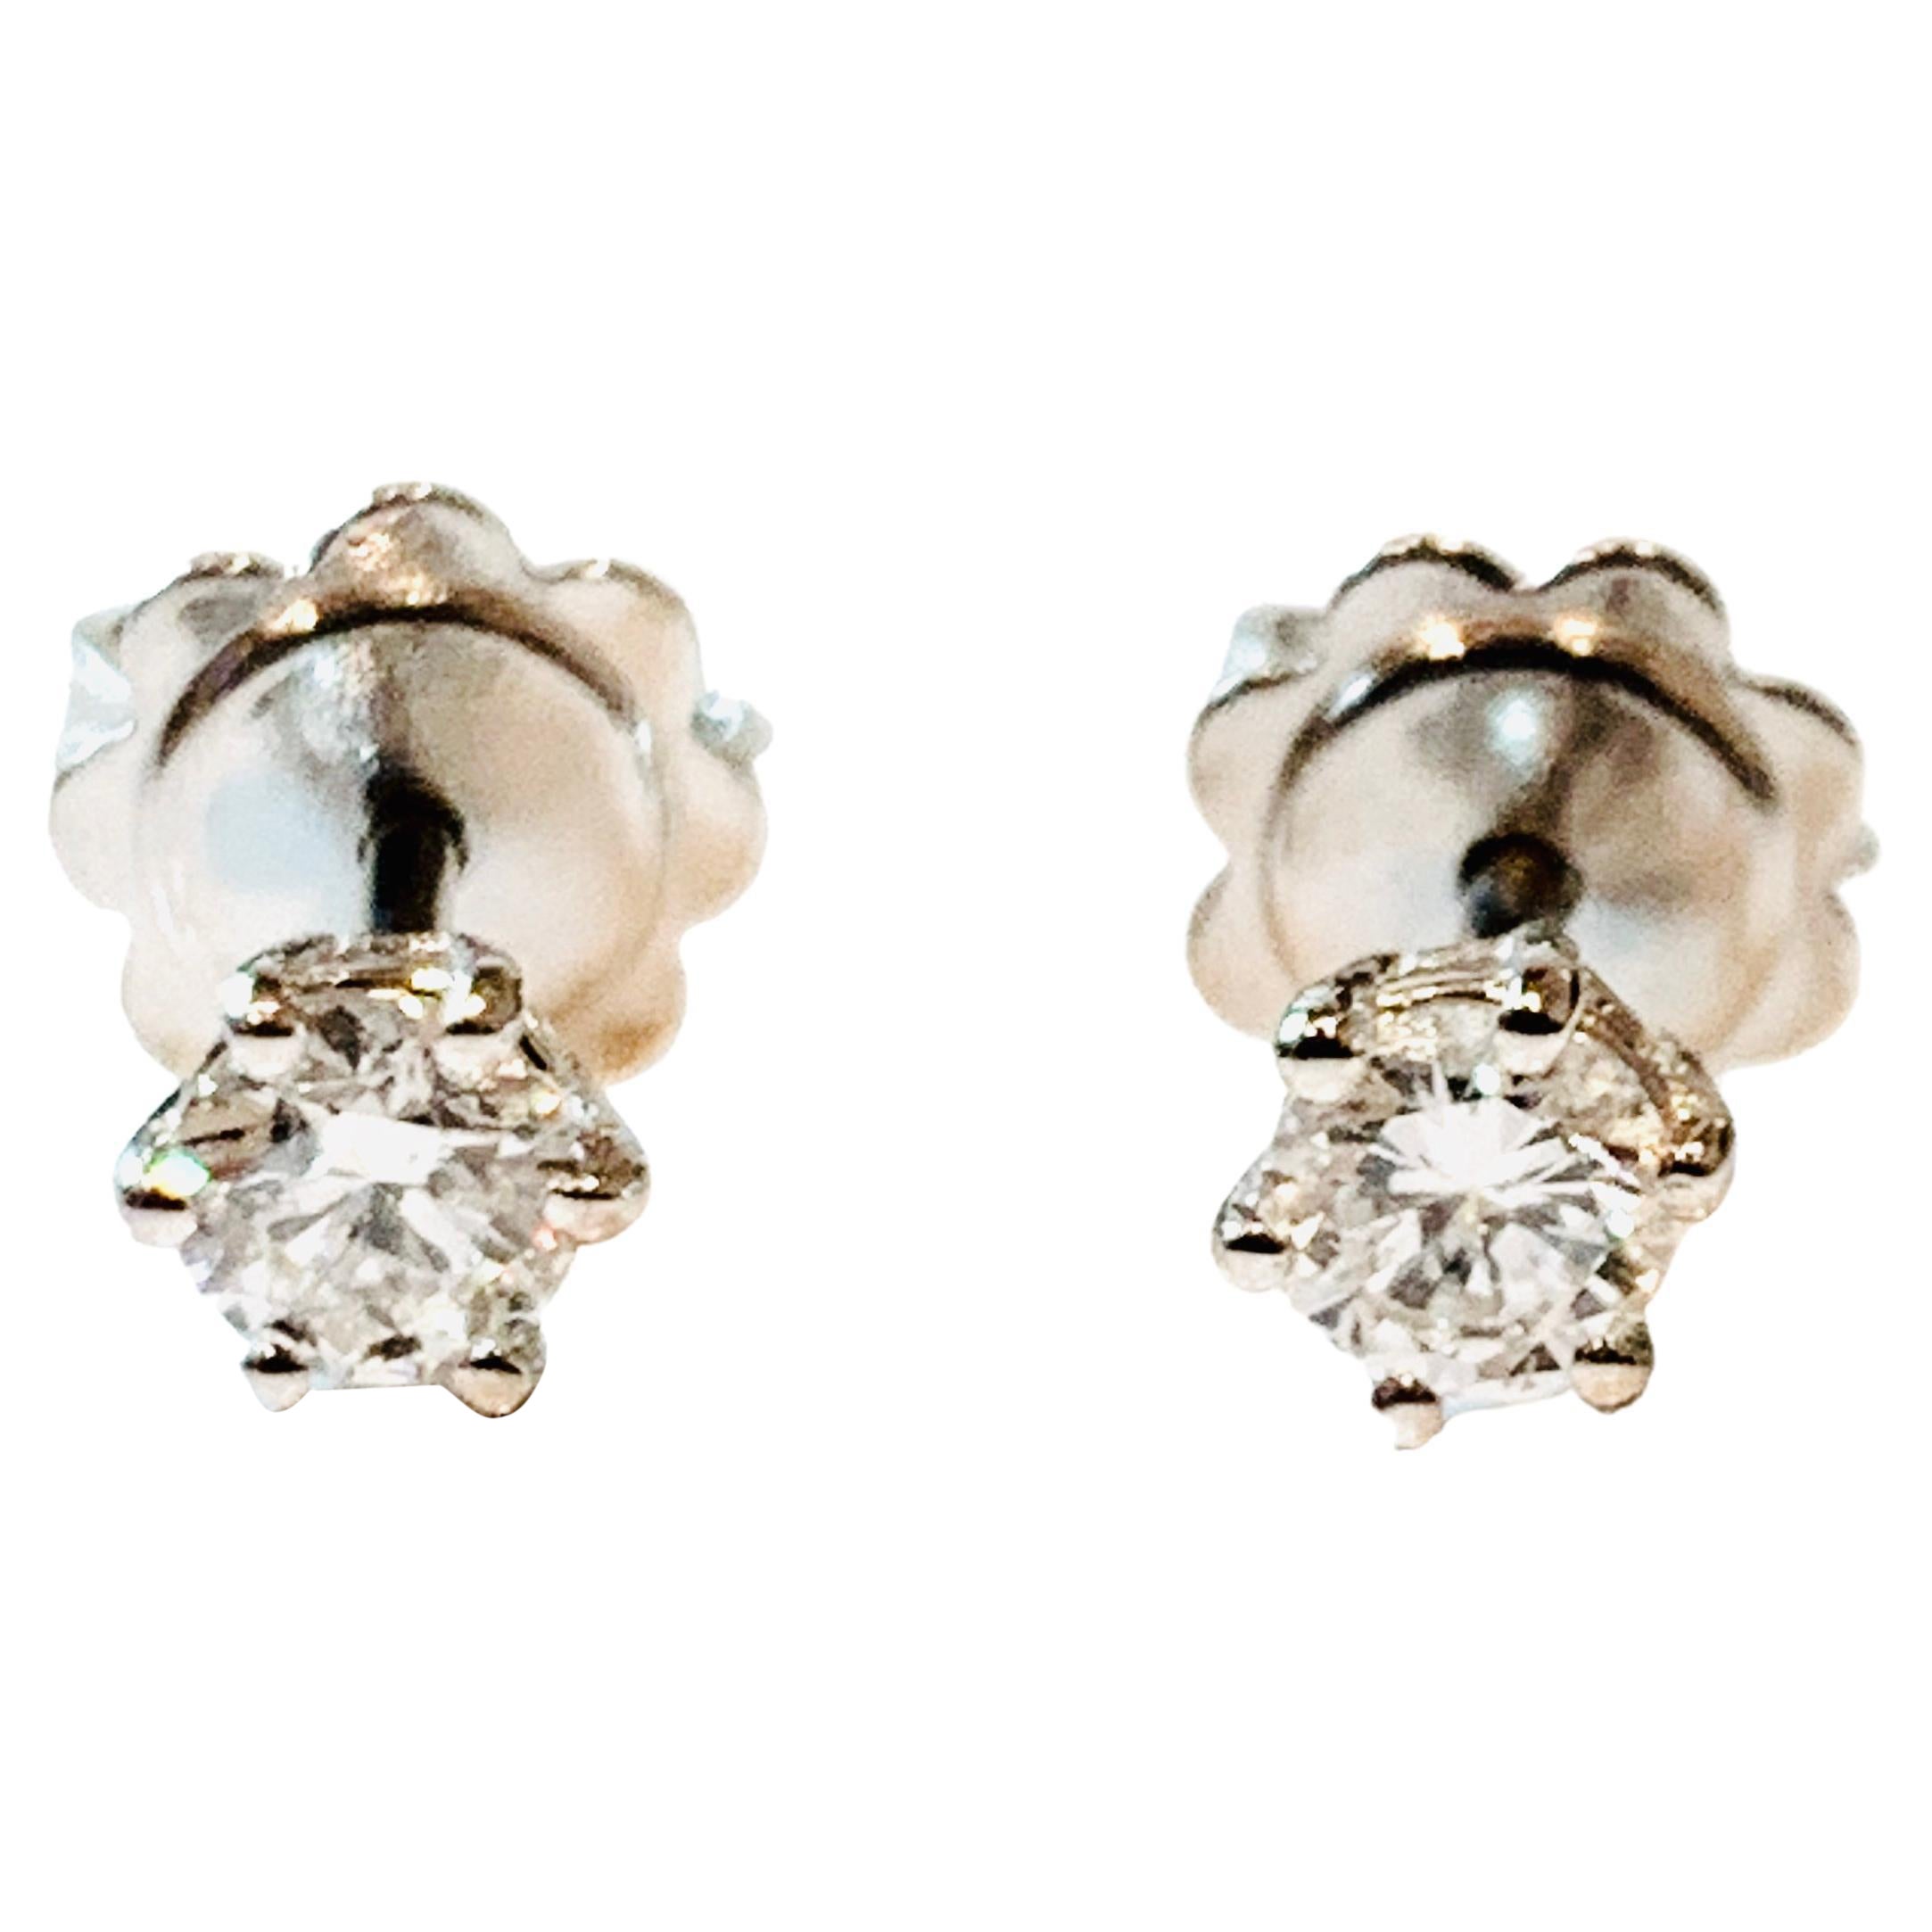 HRD Certified 0.34 Carat Star Diamonds Set in 18Kt White Gold Stud Earrings